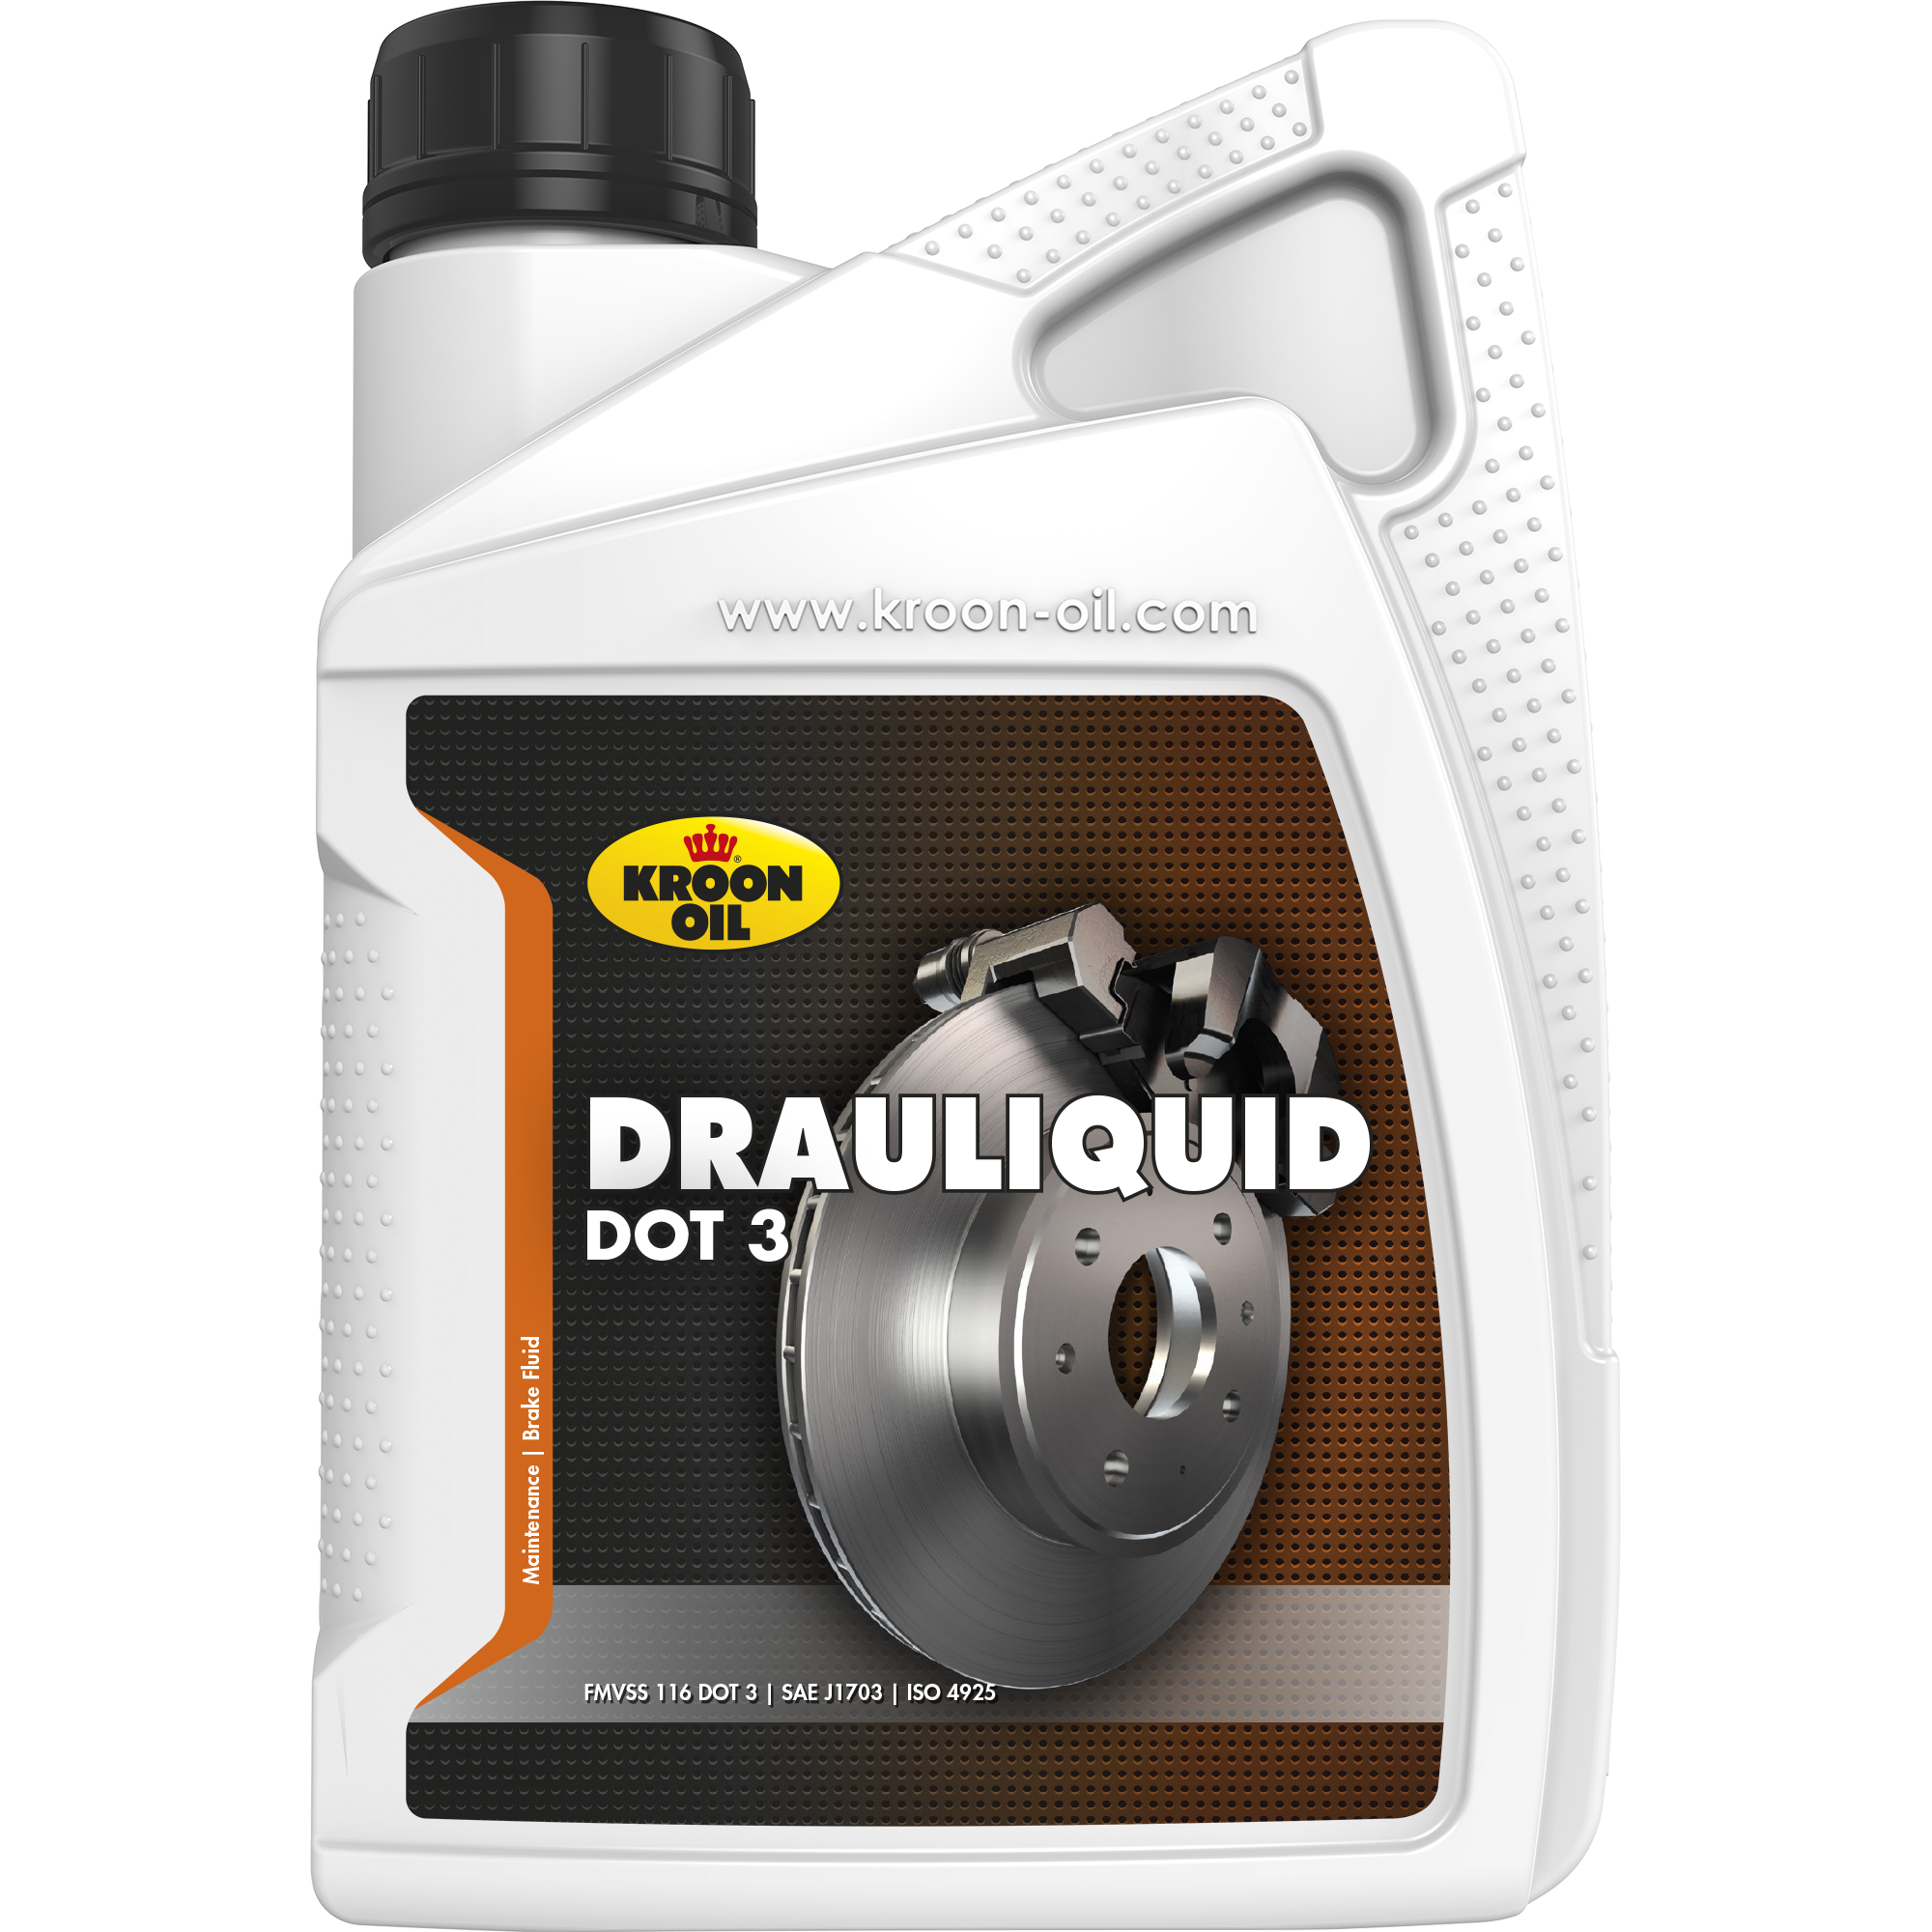 Kroon-Oil Drauliquid DOT 3, 1 lt